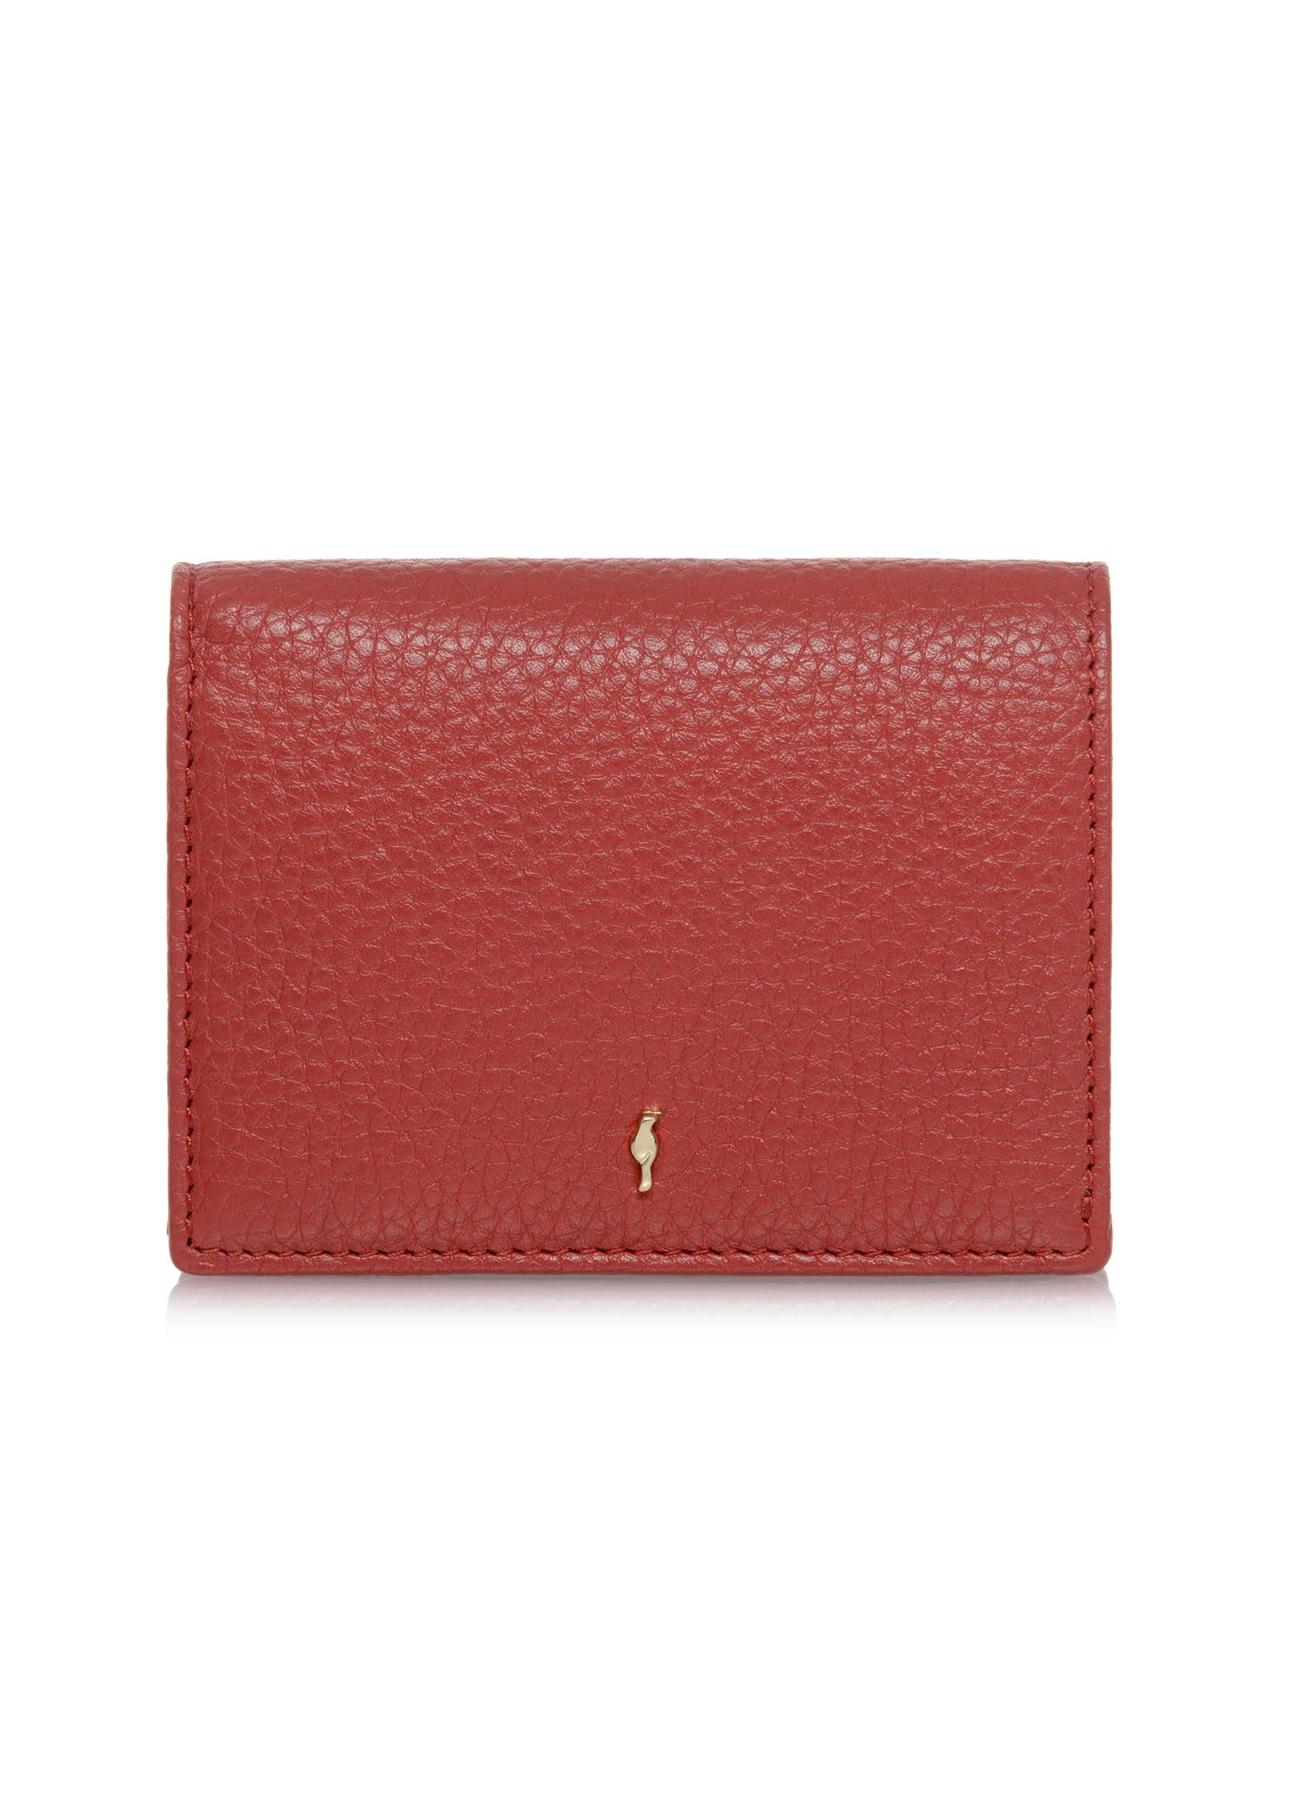 Czerwony skórzany portfel damski z ochroną RFID PORES-0807RFID-42(W24)